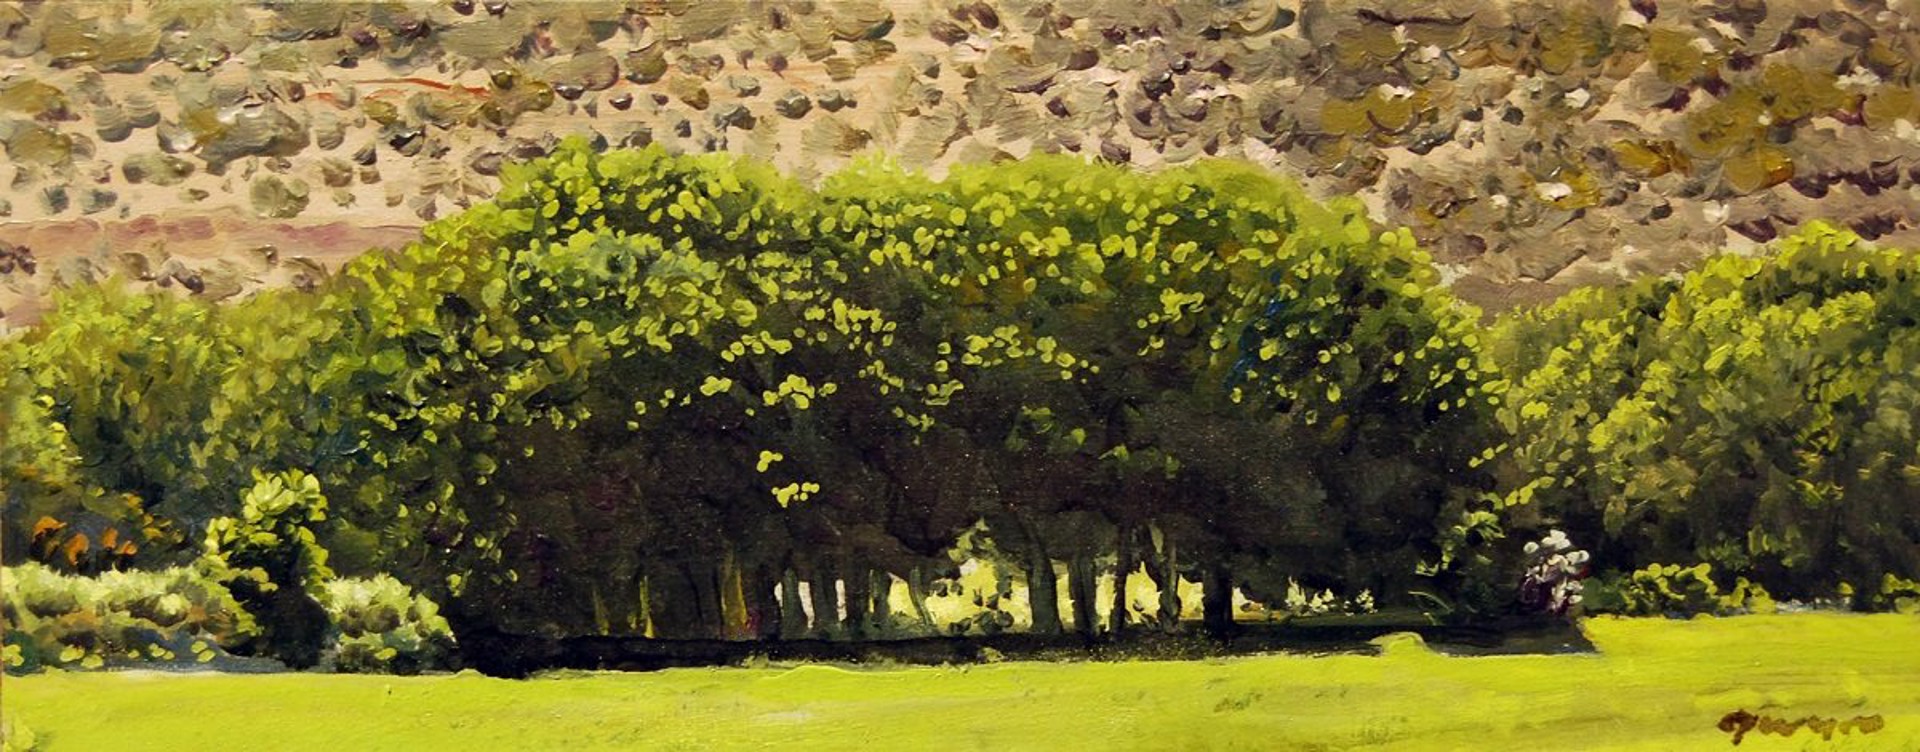 Villanueva Trees by Woody Gwyn